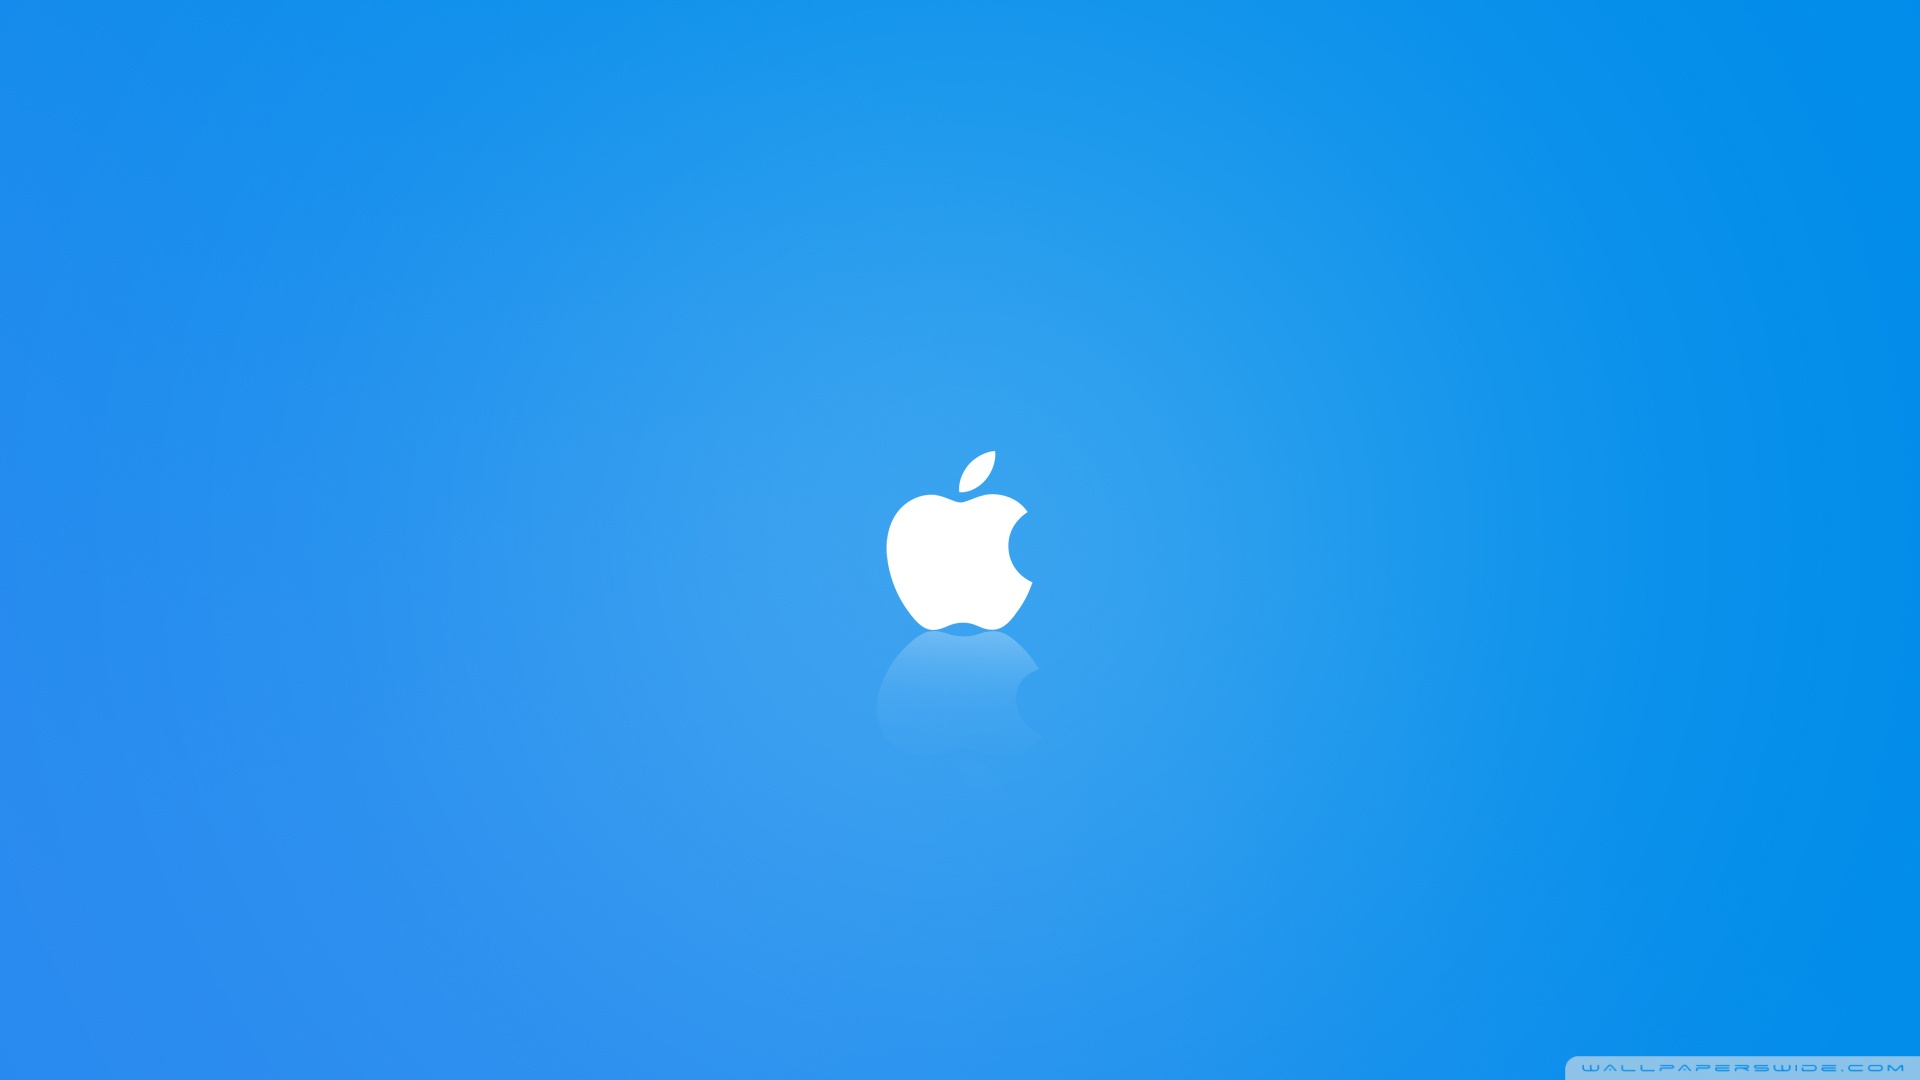 Apple MAC OS X Blue Wallpaper Full HD 1920x1080 - Free wallpaper